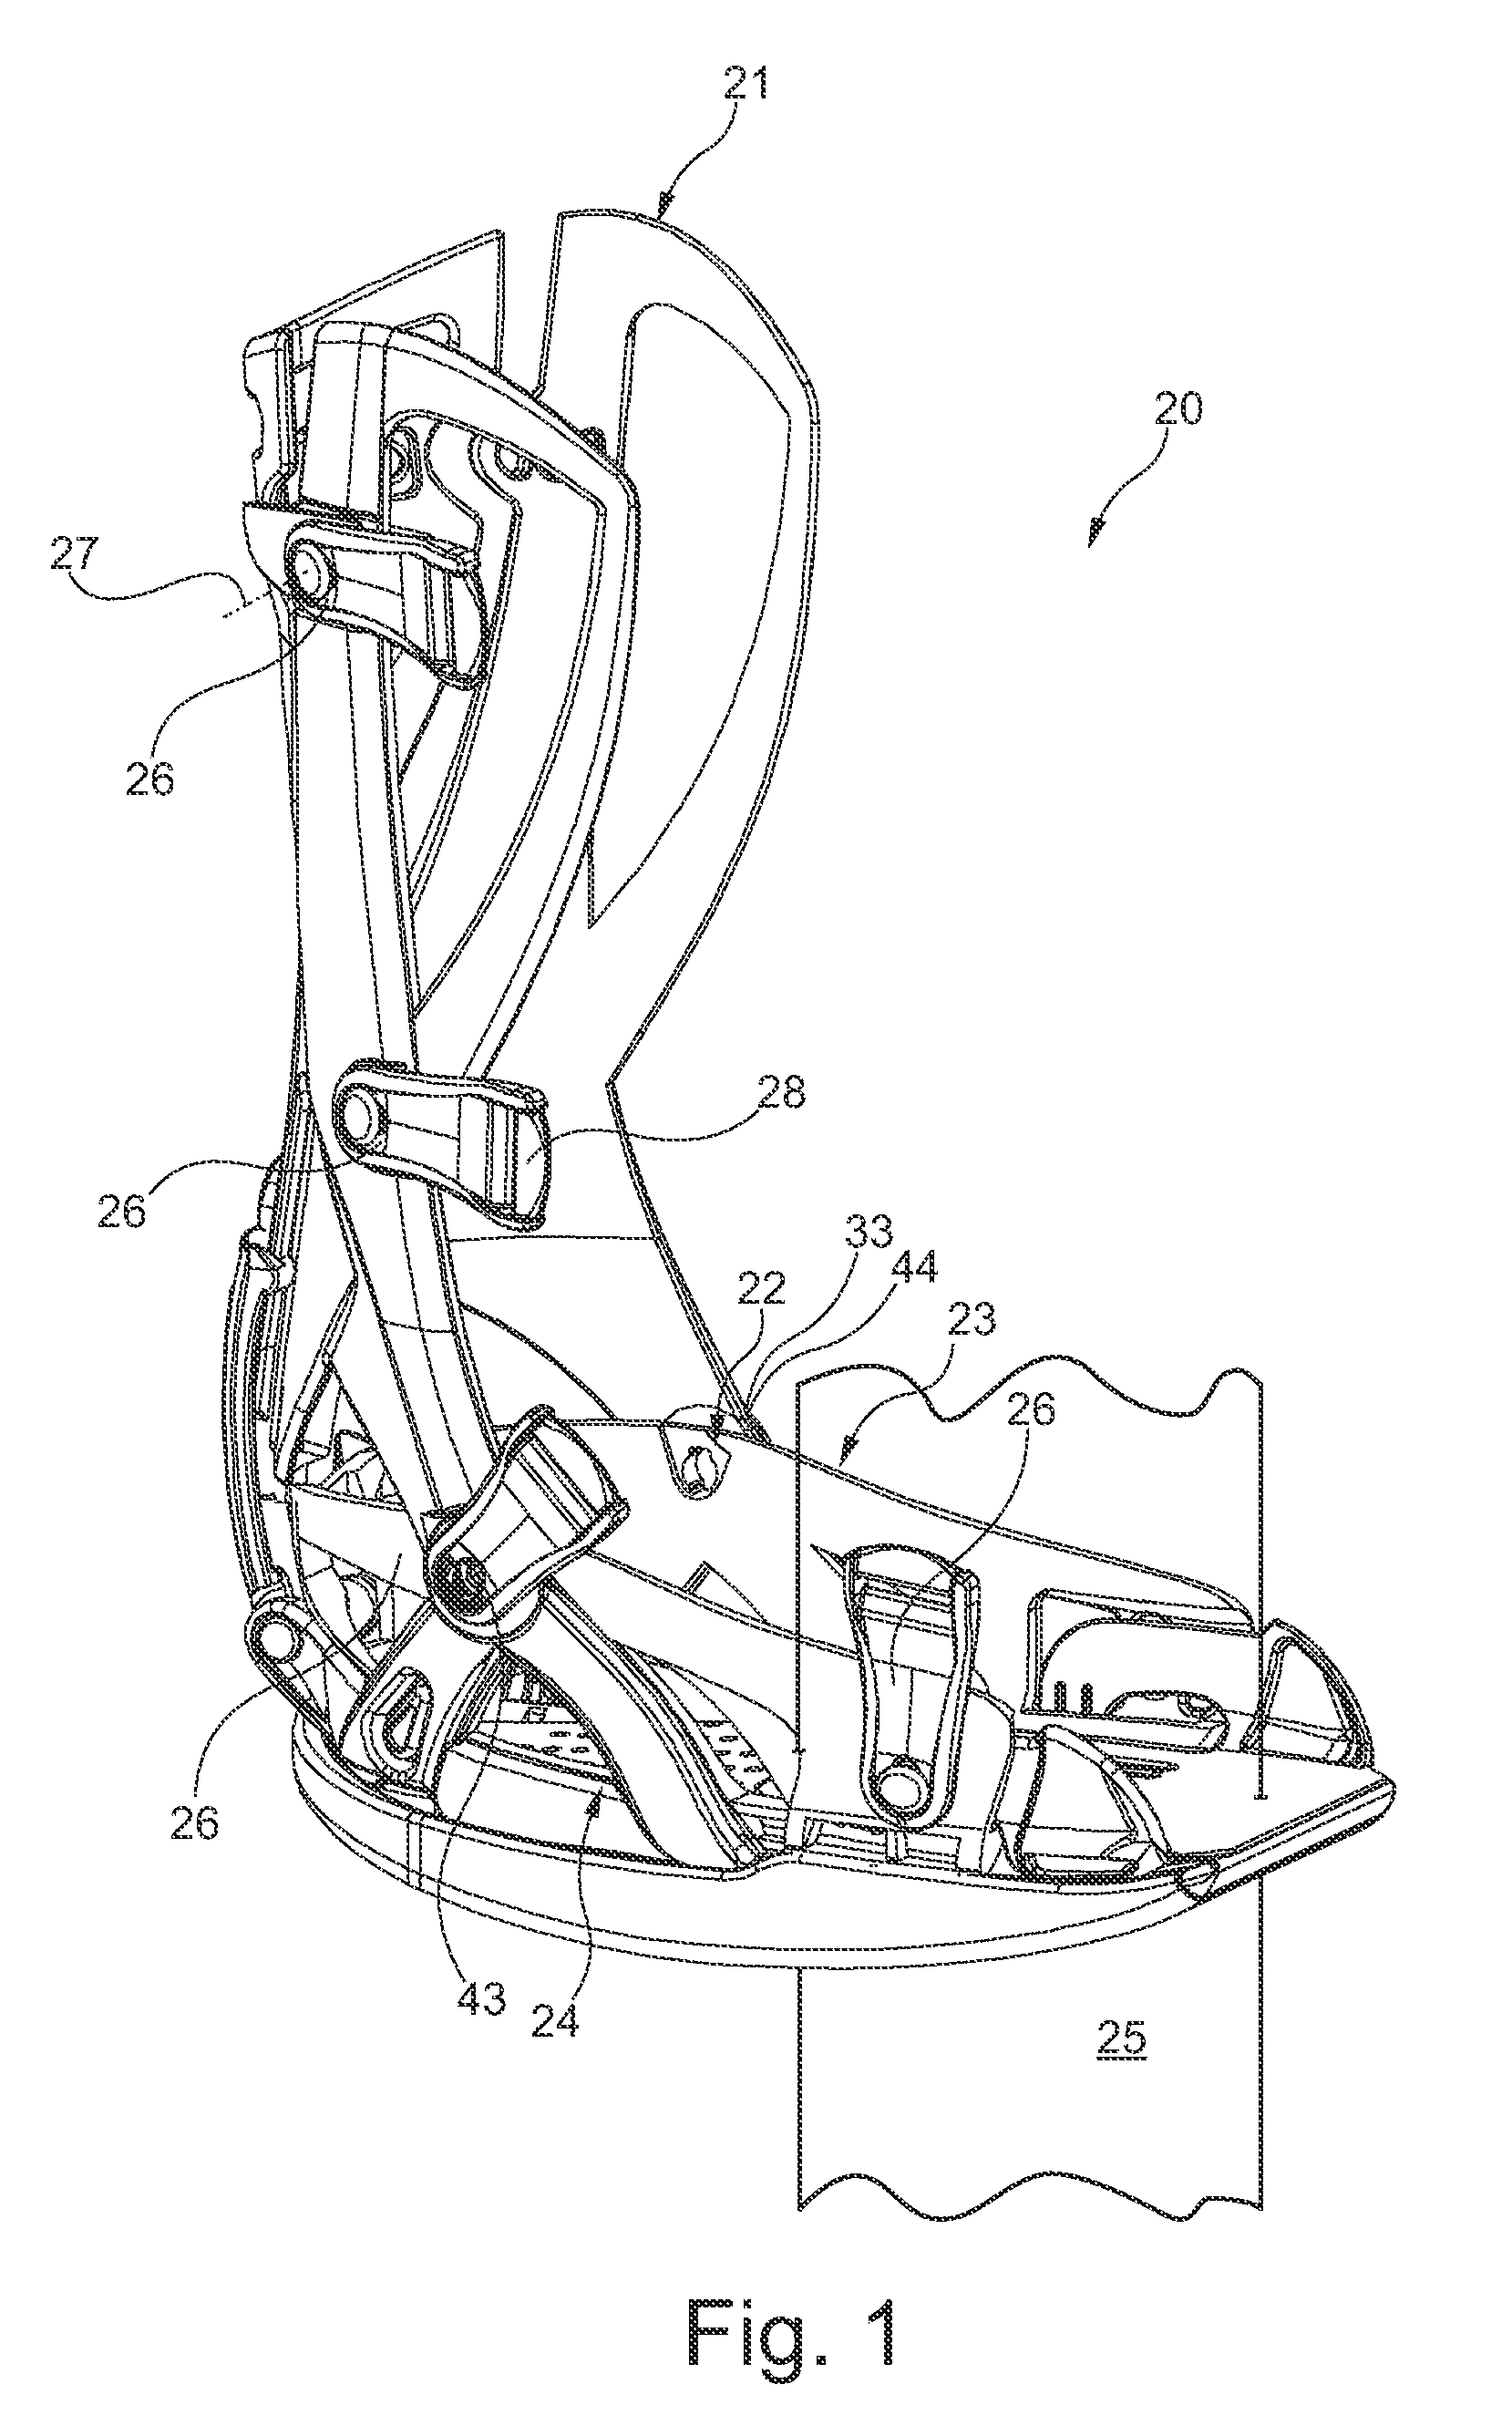 Support shell arrangement for arrangement at a lower leg